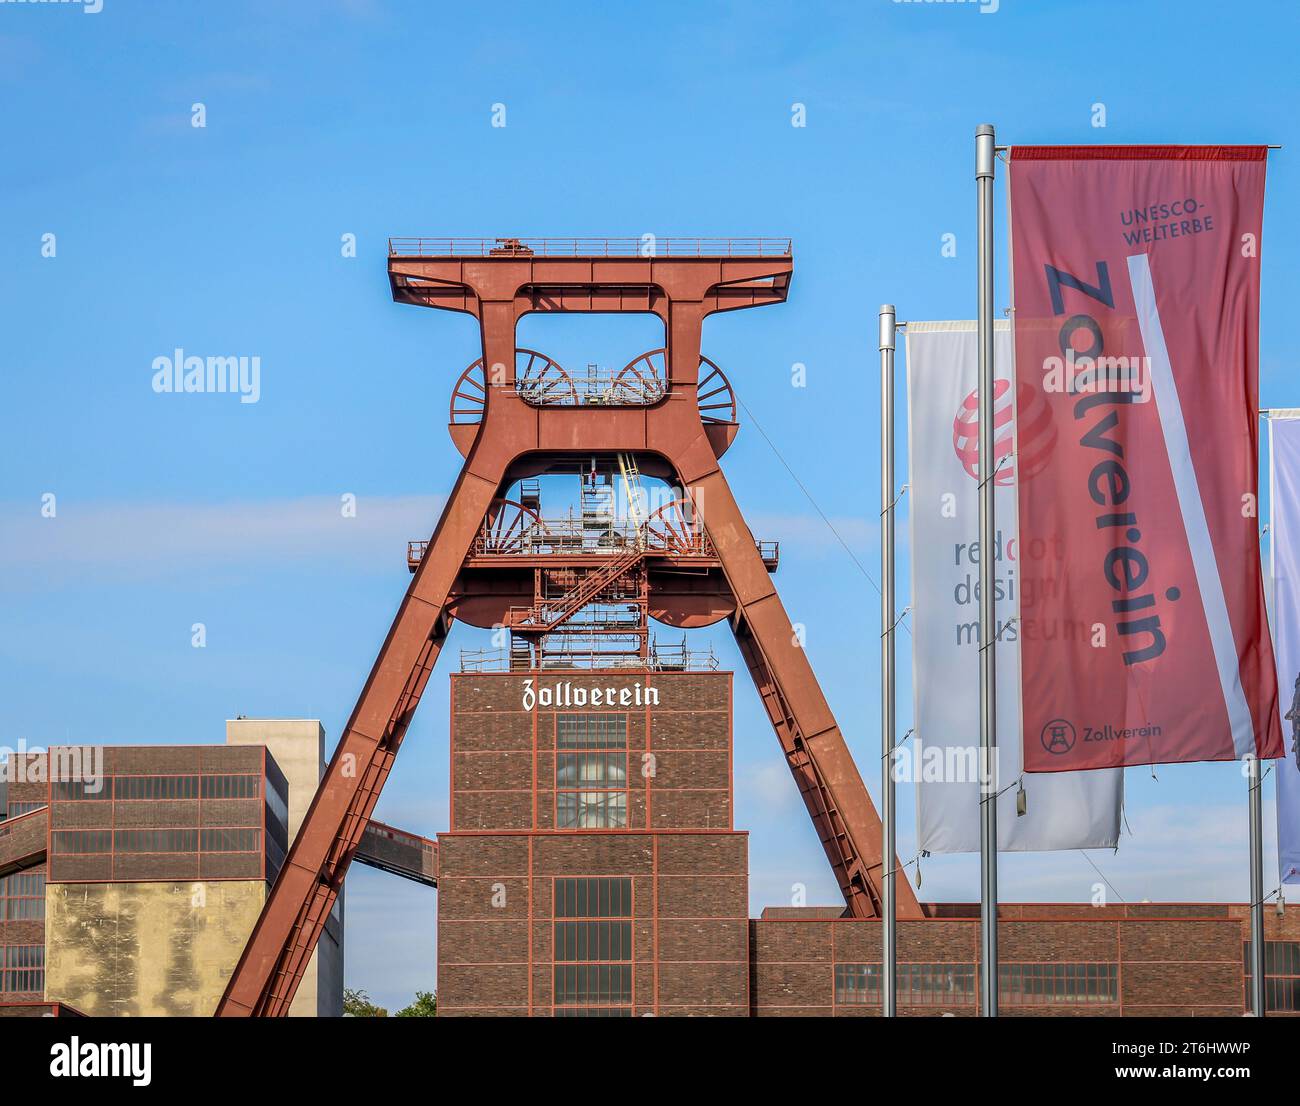 Essen, région de la Ruhr, Rhénanie-du-Nord-Westphalie, Allemagne - Zeche Zollverein, patrimoine mondial de l'UNESCO Zollverein, Foerderturm. Banque D'Images